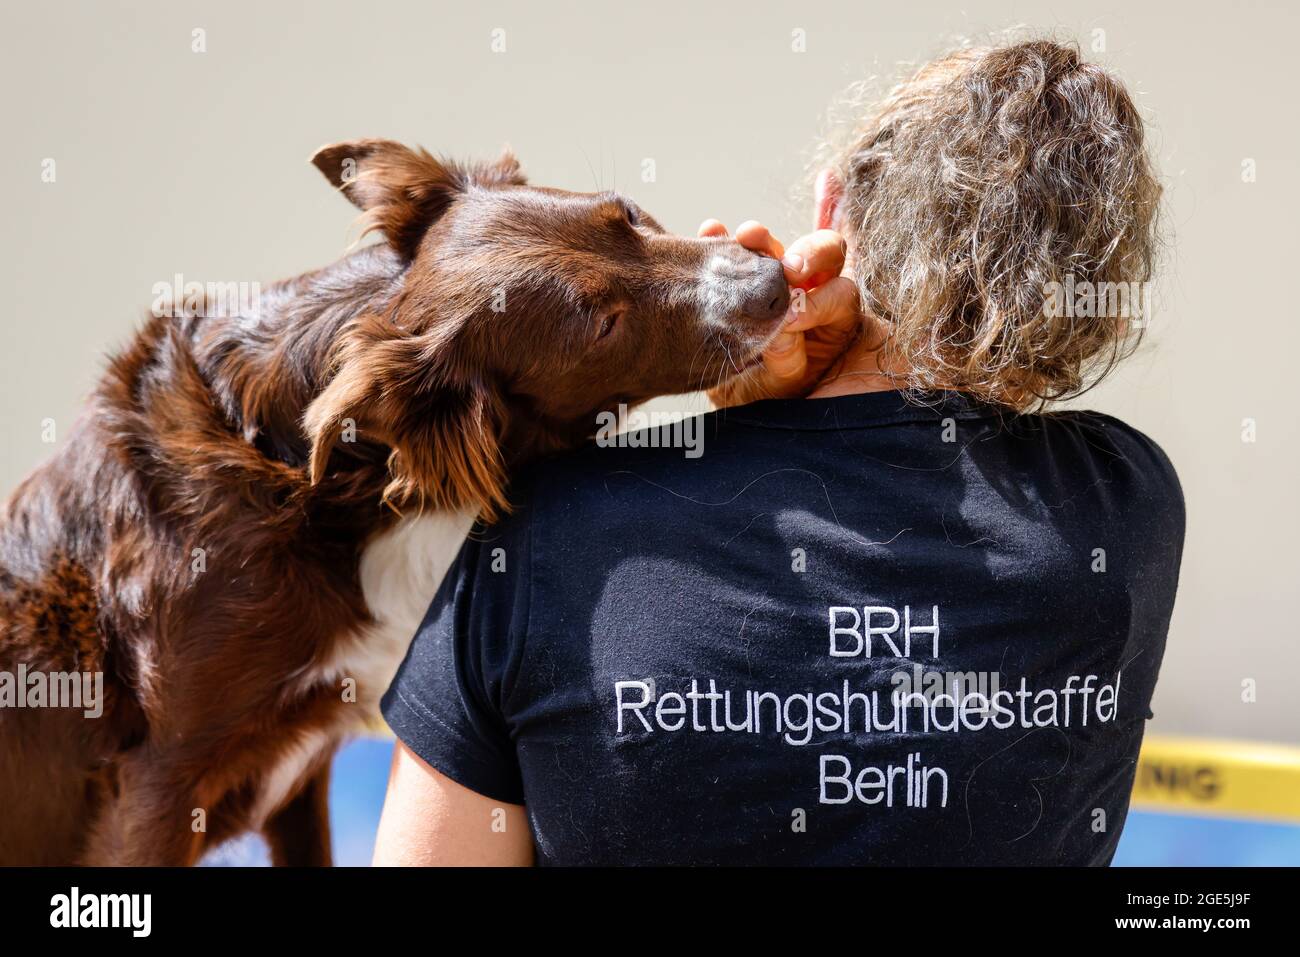 Berlín, Alemania. 15th de agosto de 2021. Un perro de rescate de la BRH Rattungshundestaffel Berlín recibe un regalo de su líder en la proyección de abanico de 'PAW Patrol: Der Kinofilm' en el cine en el Kulturbrauerei. Crédito: Gerald Matzka/dpa/Alamy Live News Foto de stock